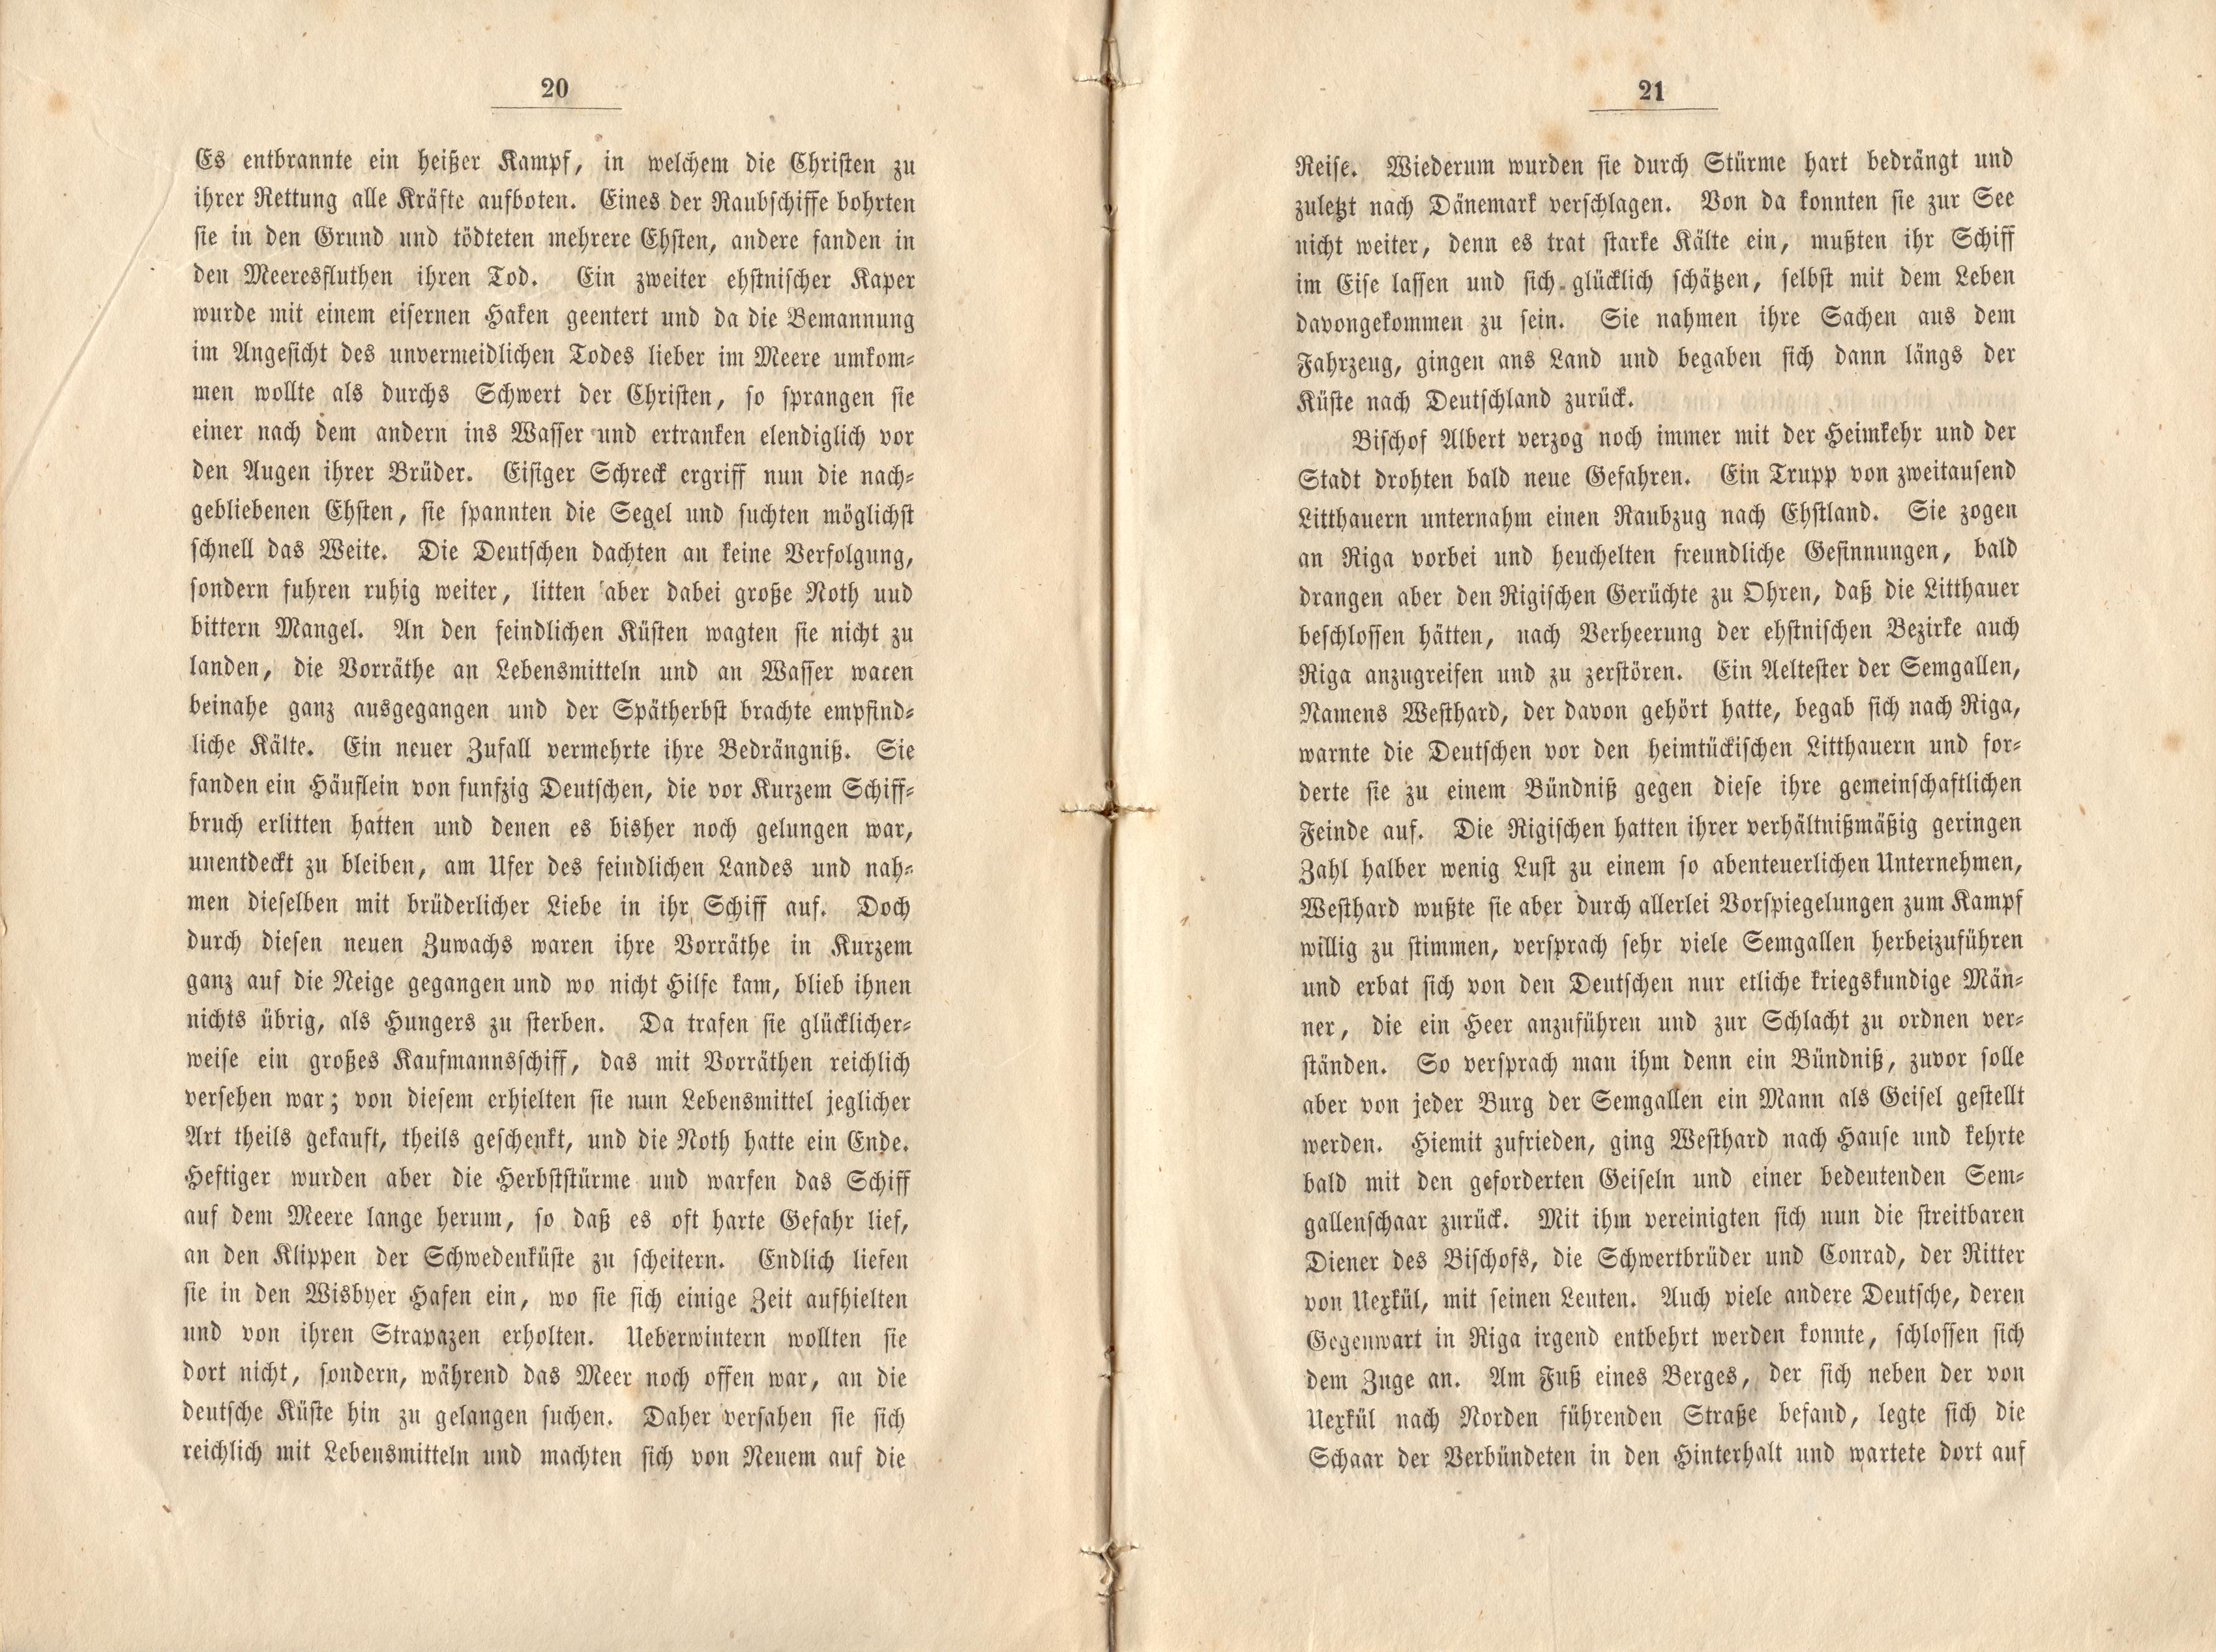 Felliner Blätter (1859) | 11. (20-21) Main body of text